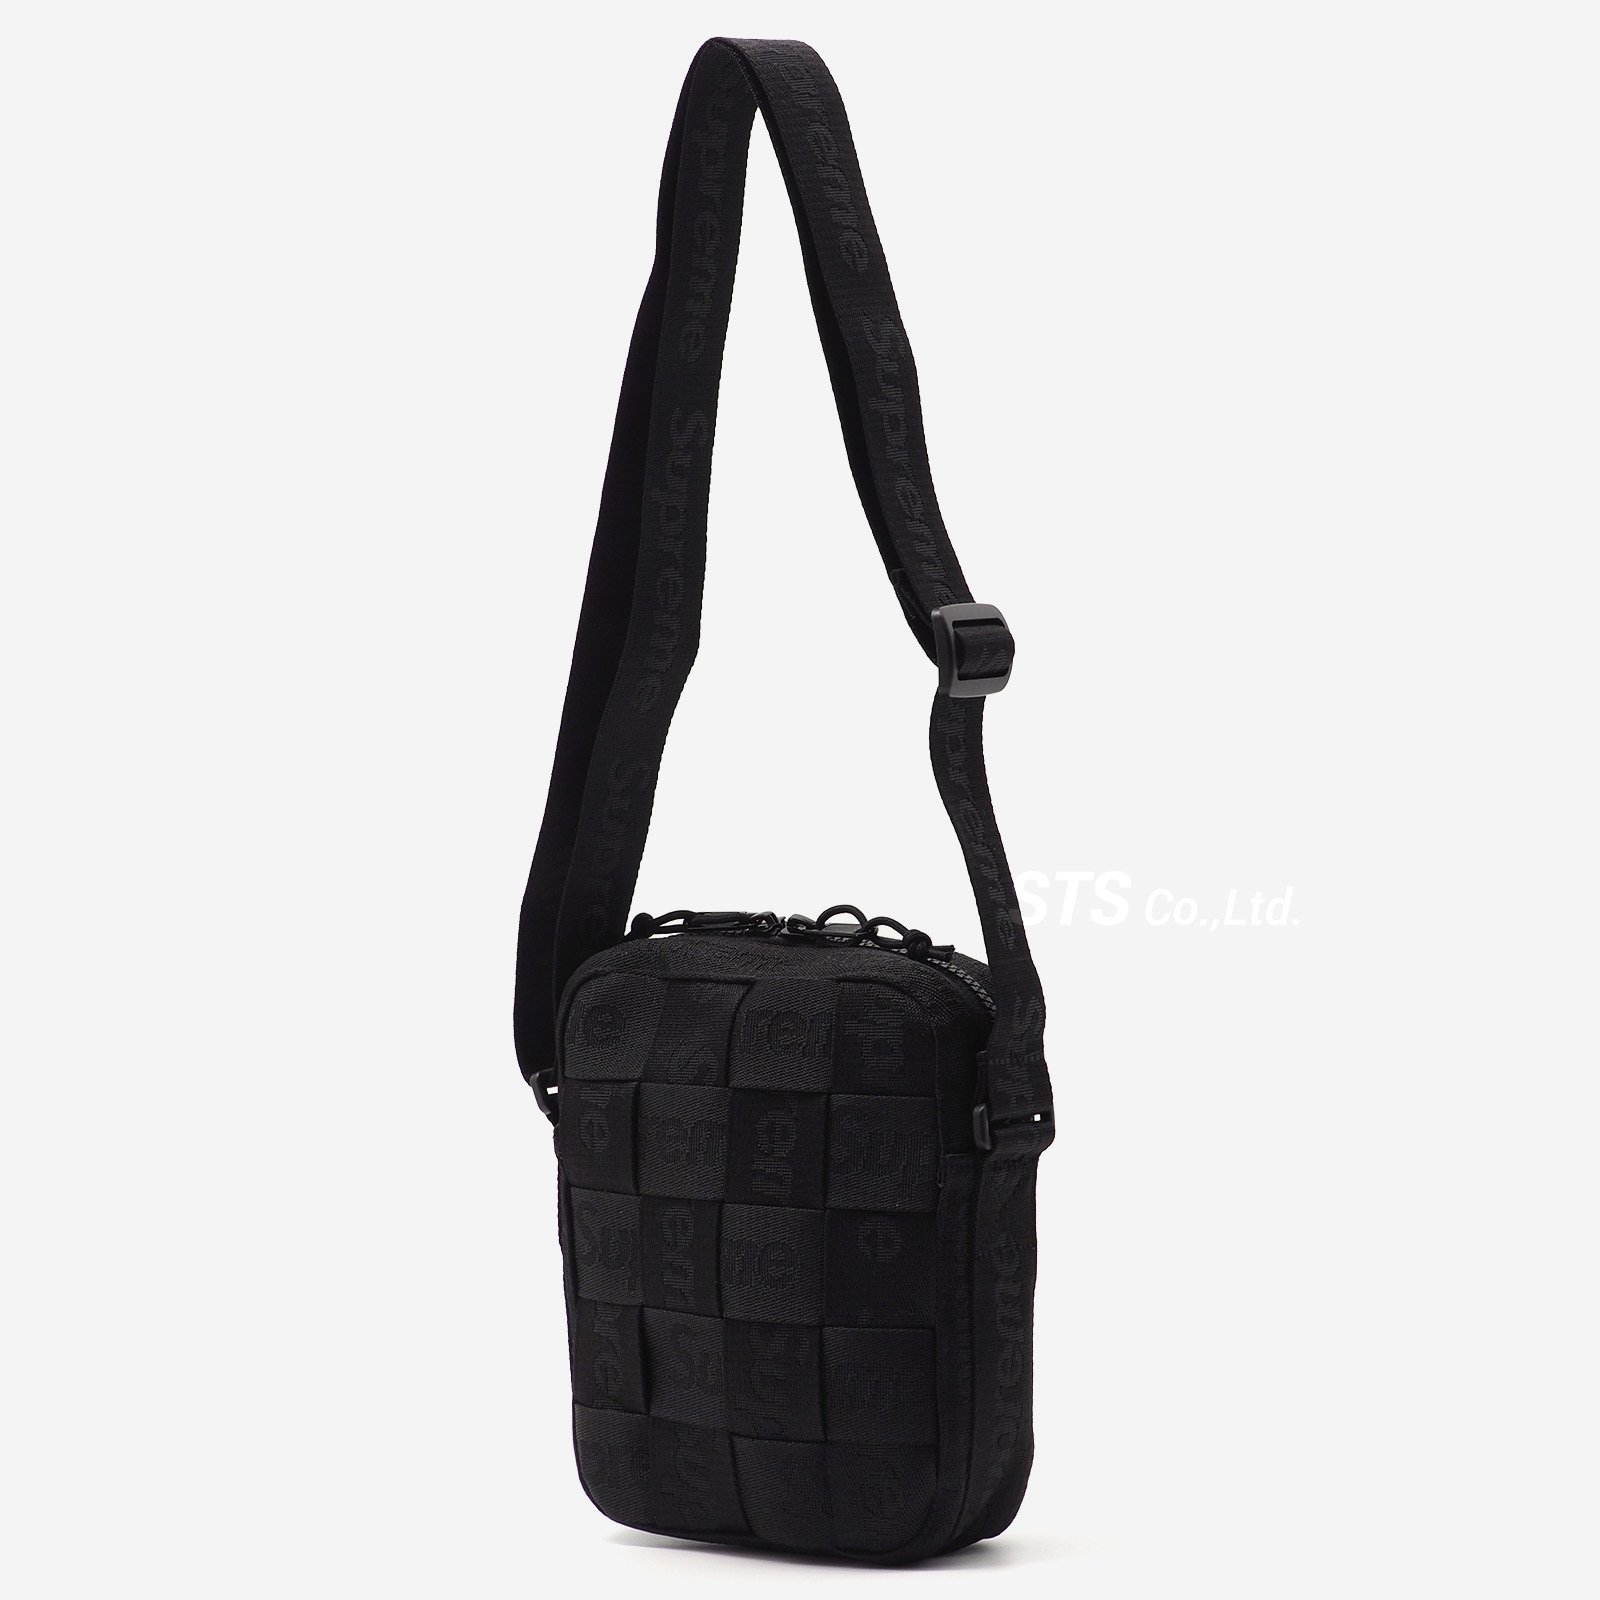 Supreme Woven Shoulder Bag Black